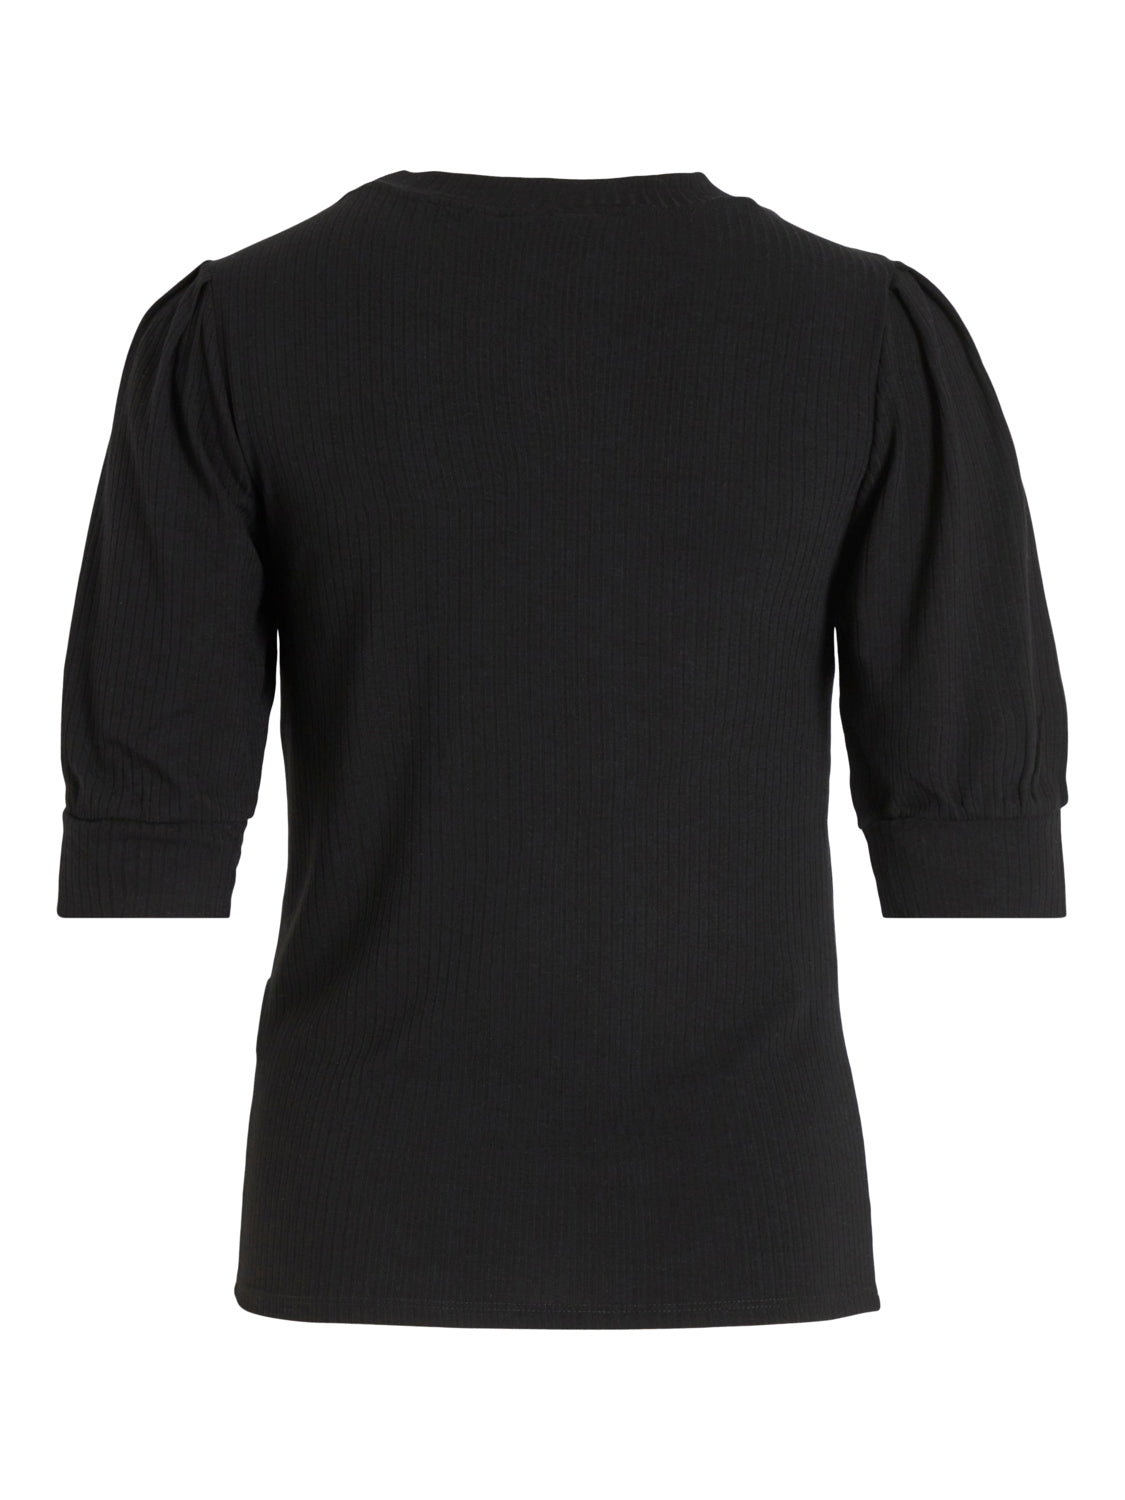 VIFELIA T-Shirt - Black